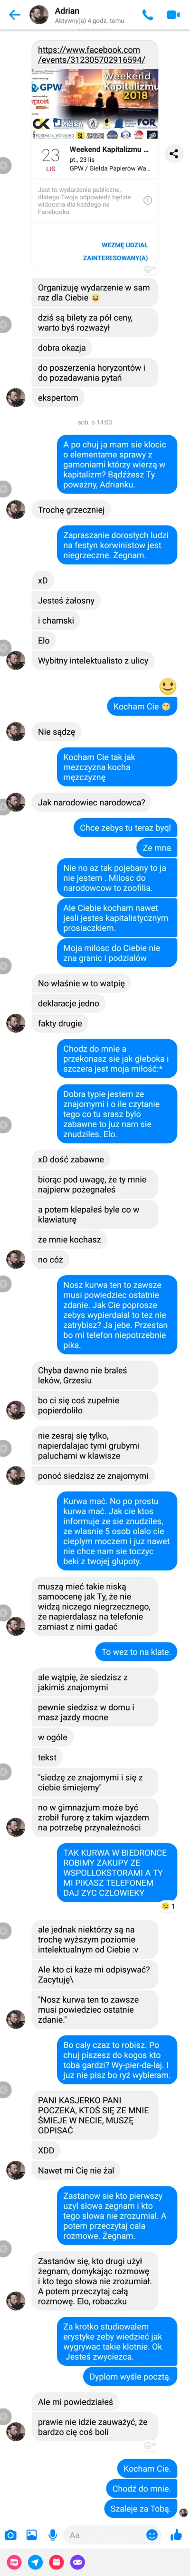 szynszyliusz - Uszanowanko dla Społeczności Debili z Internetu.

tl;dr;666

Na ws...